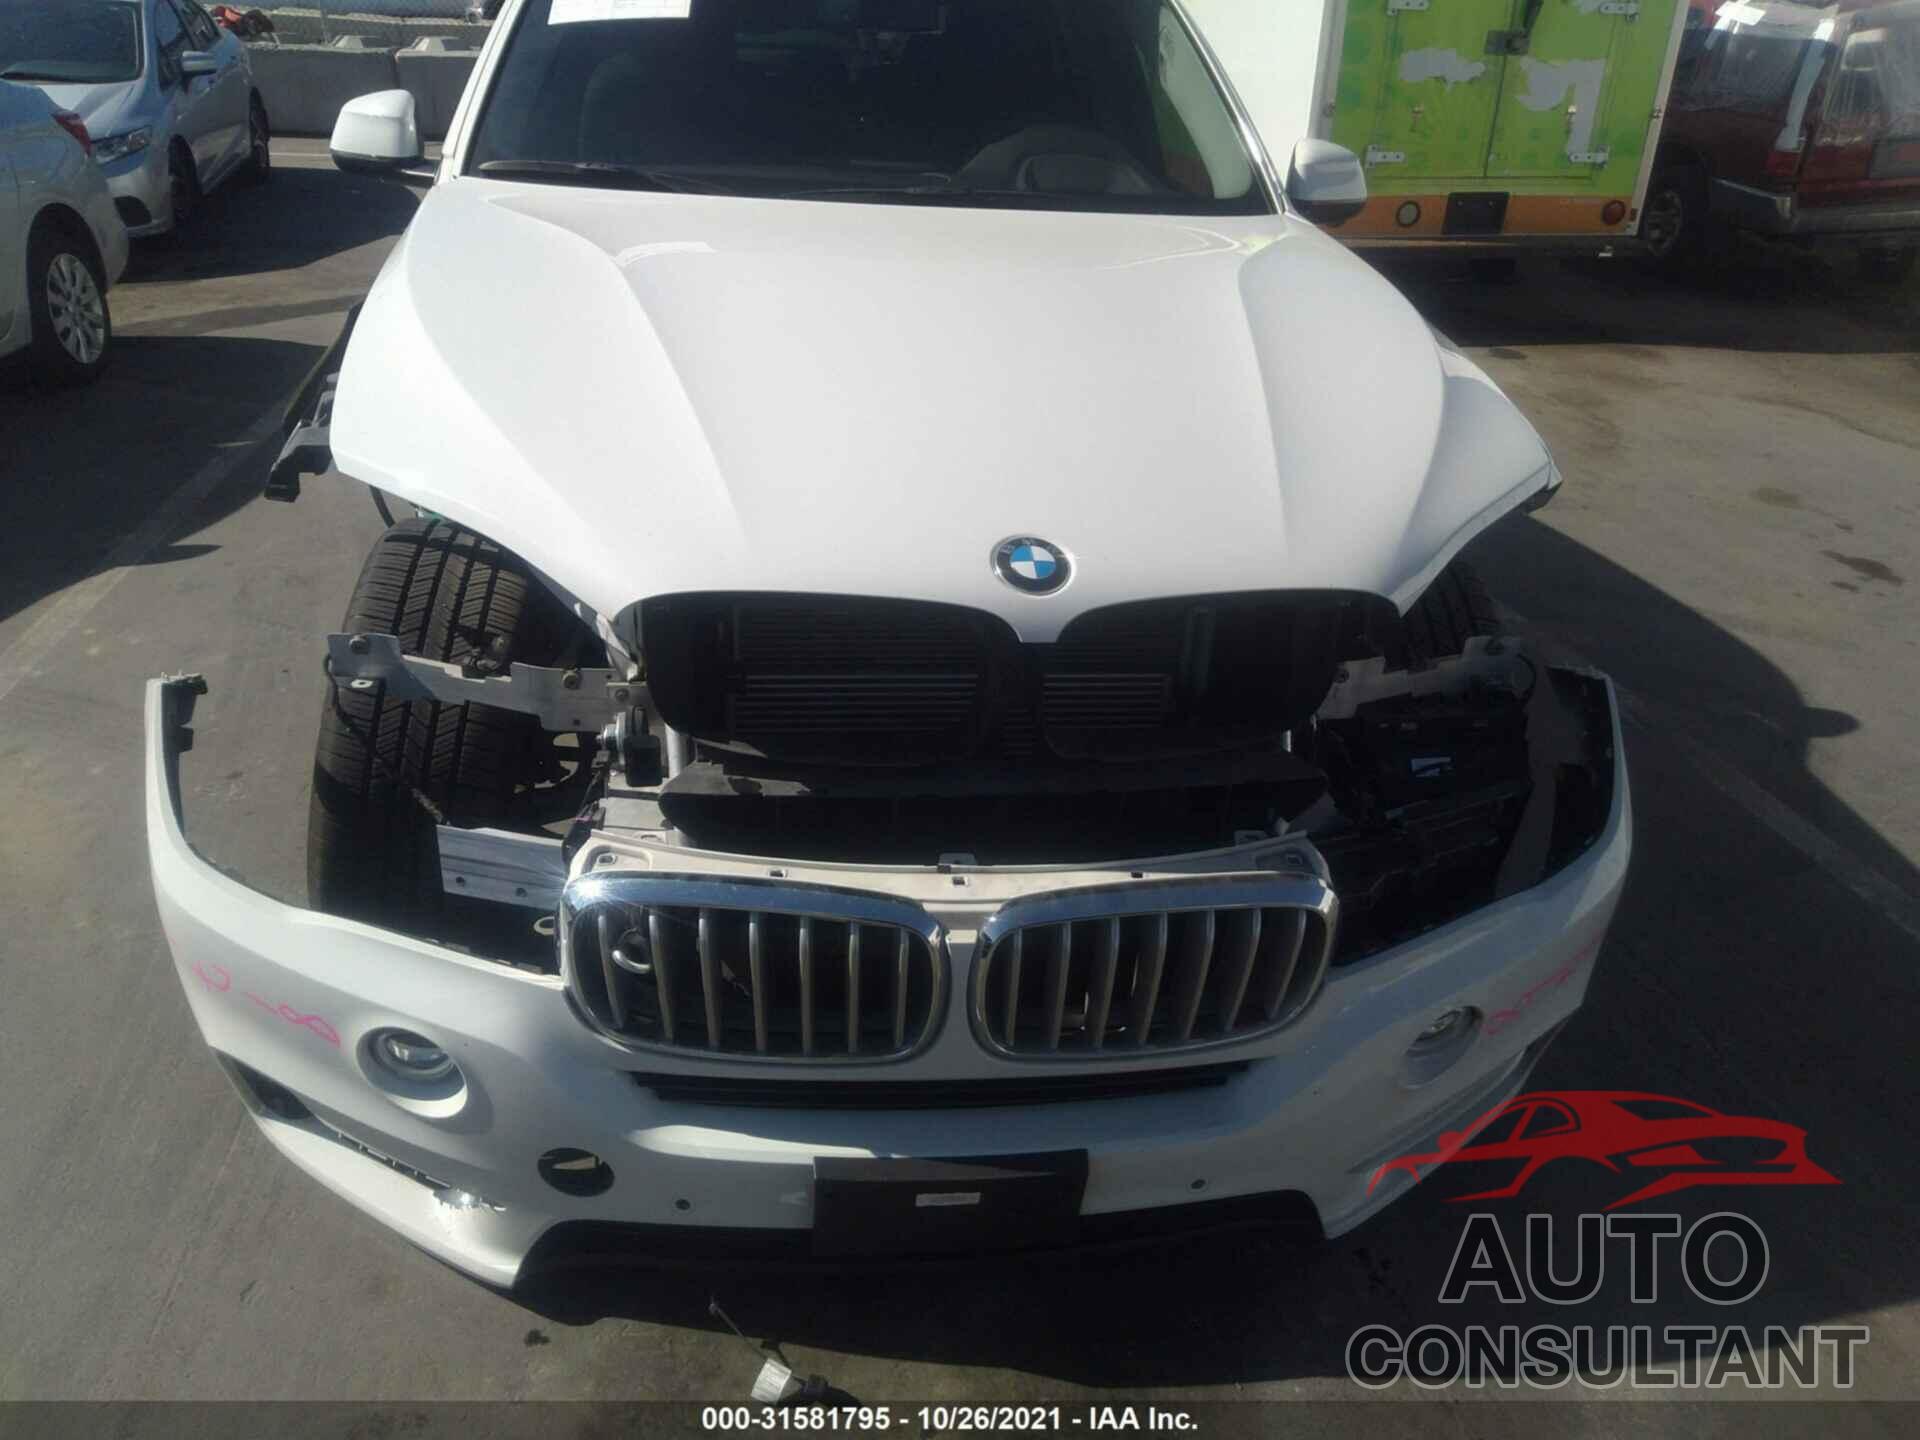 BMW X5 EDRIVE 2016 - 5UXKT0C56G0S79230